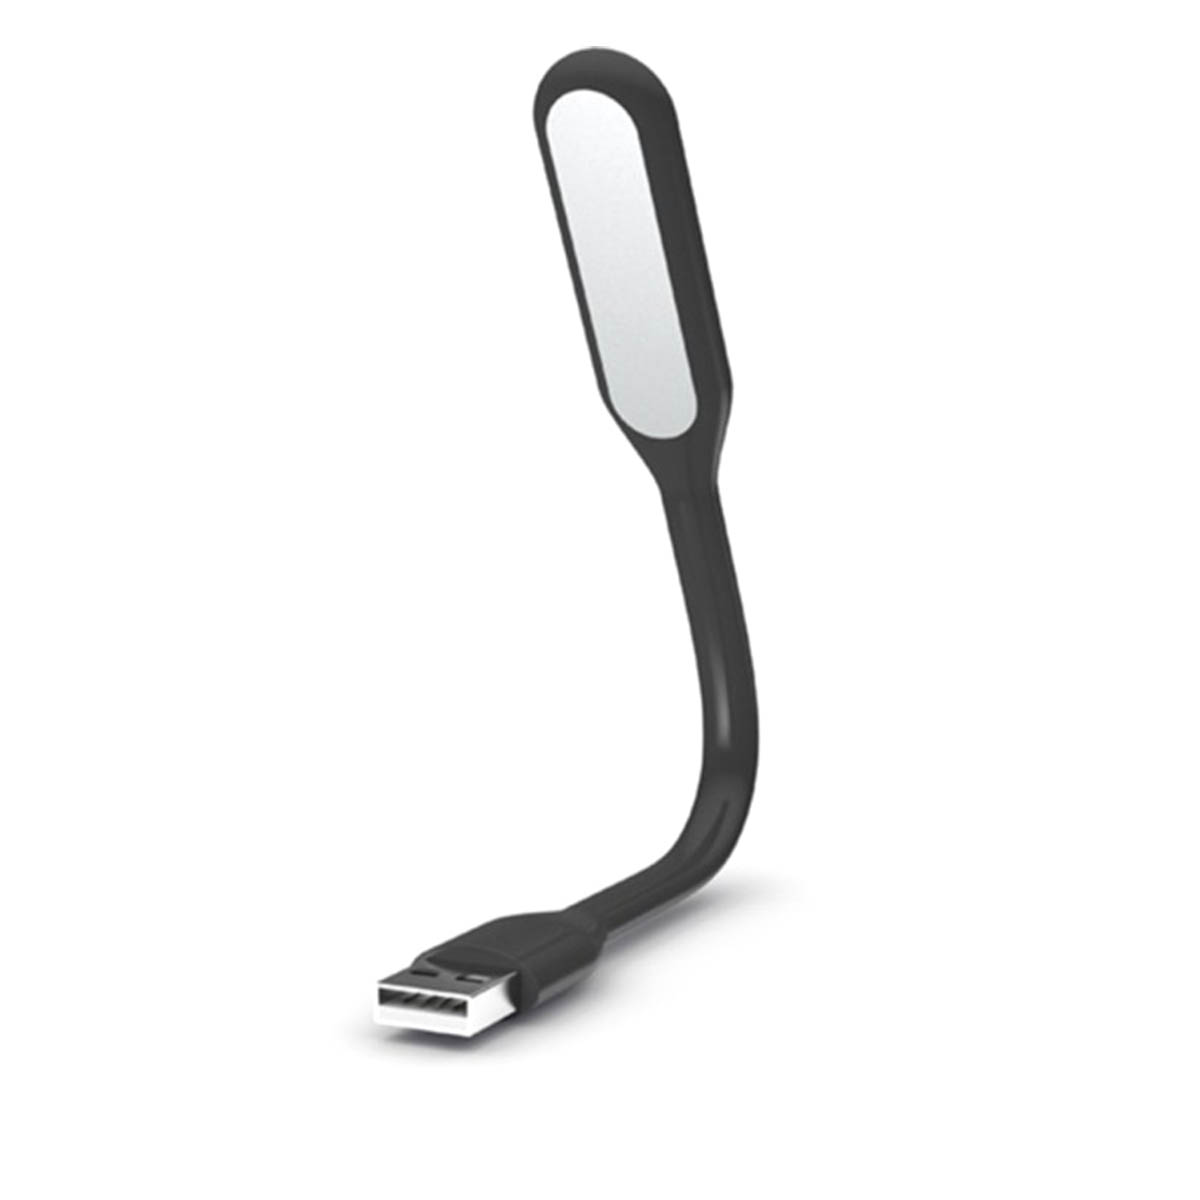 LED USB светильник, 6 диодов, длина 16.5 см, цвет черный